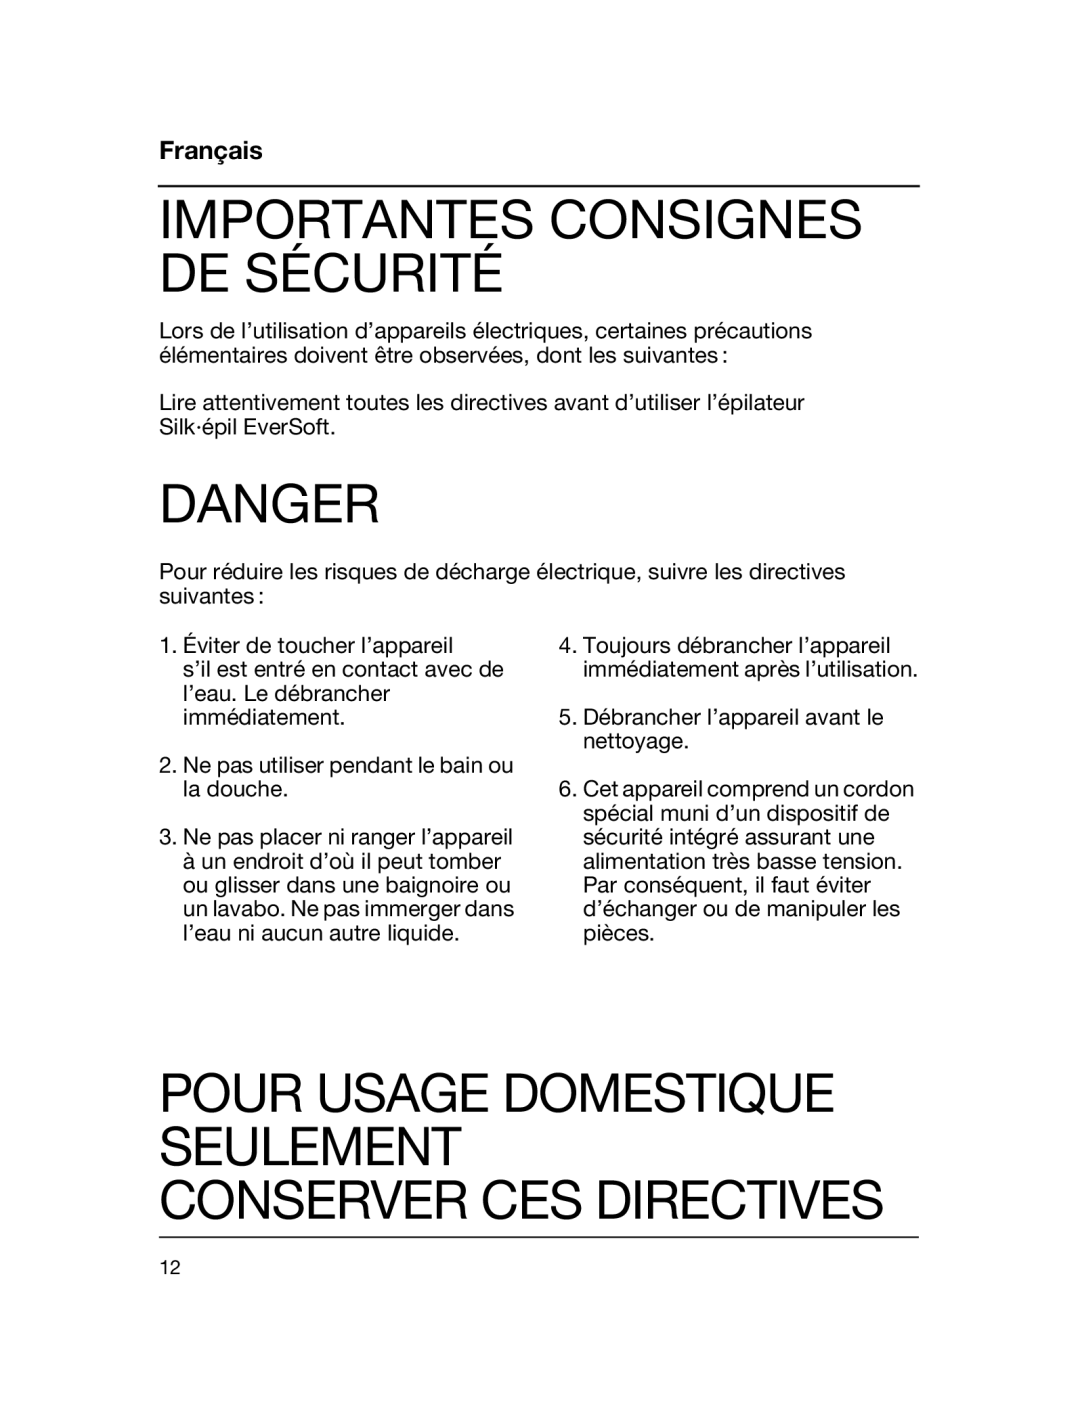 Braun 5316 Importantes Consignes De Sécurité, Pour Usage Domestique Seulement, Conserver Ces Directives, Français, Danger 